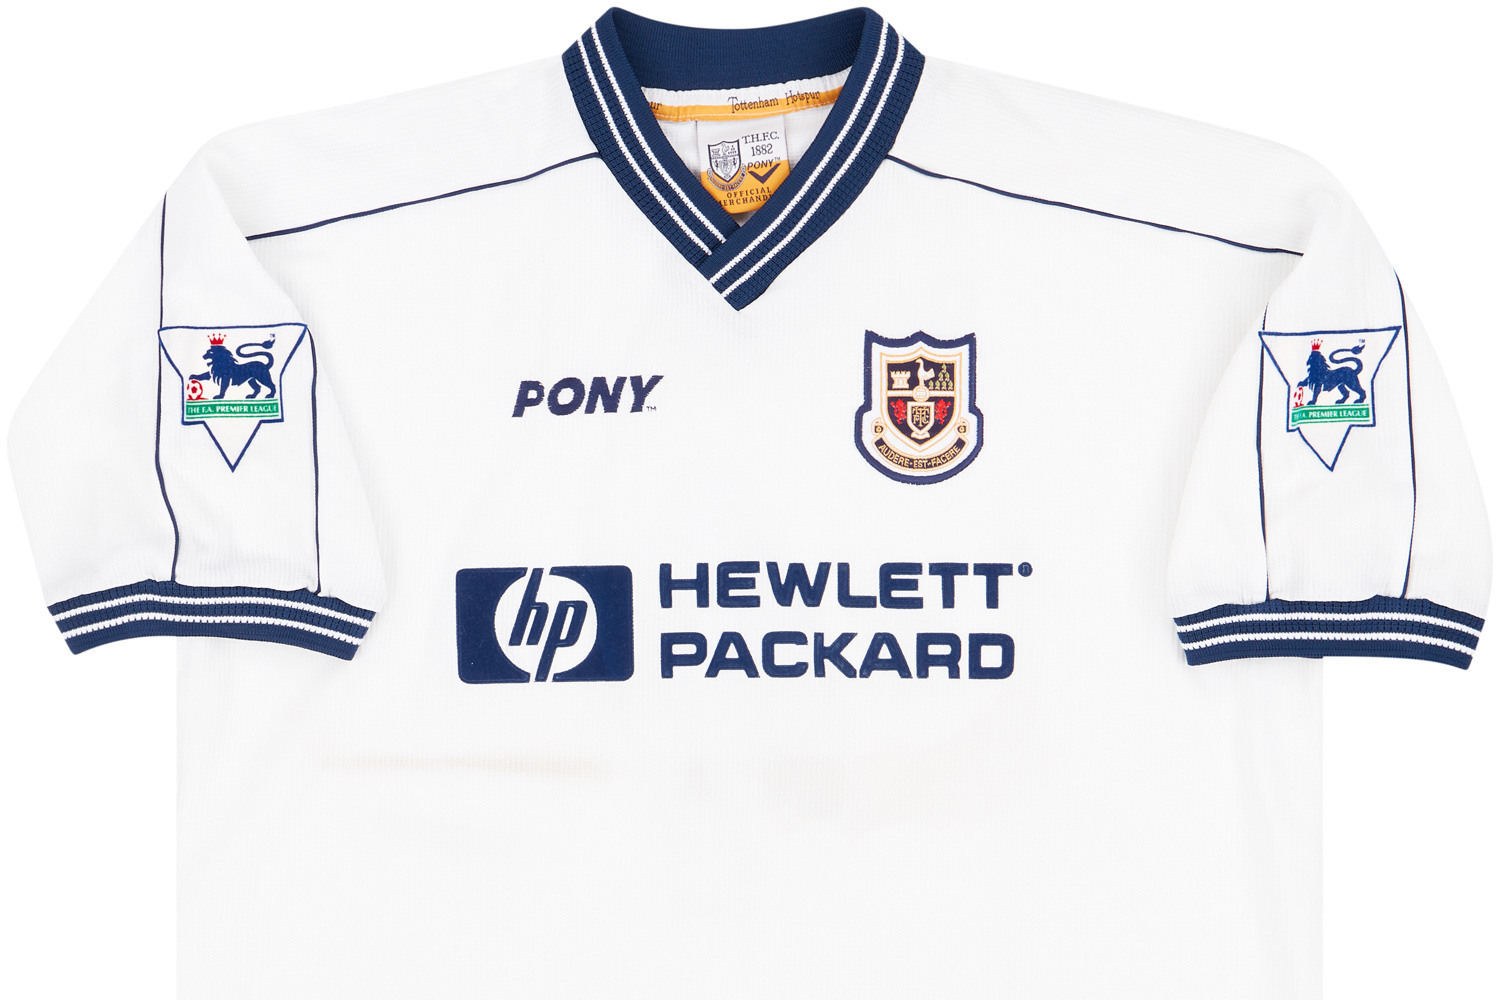 Tottenham Hotspur Away football shirt 1997 - 1998. Sponsored by